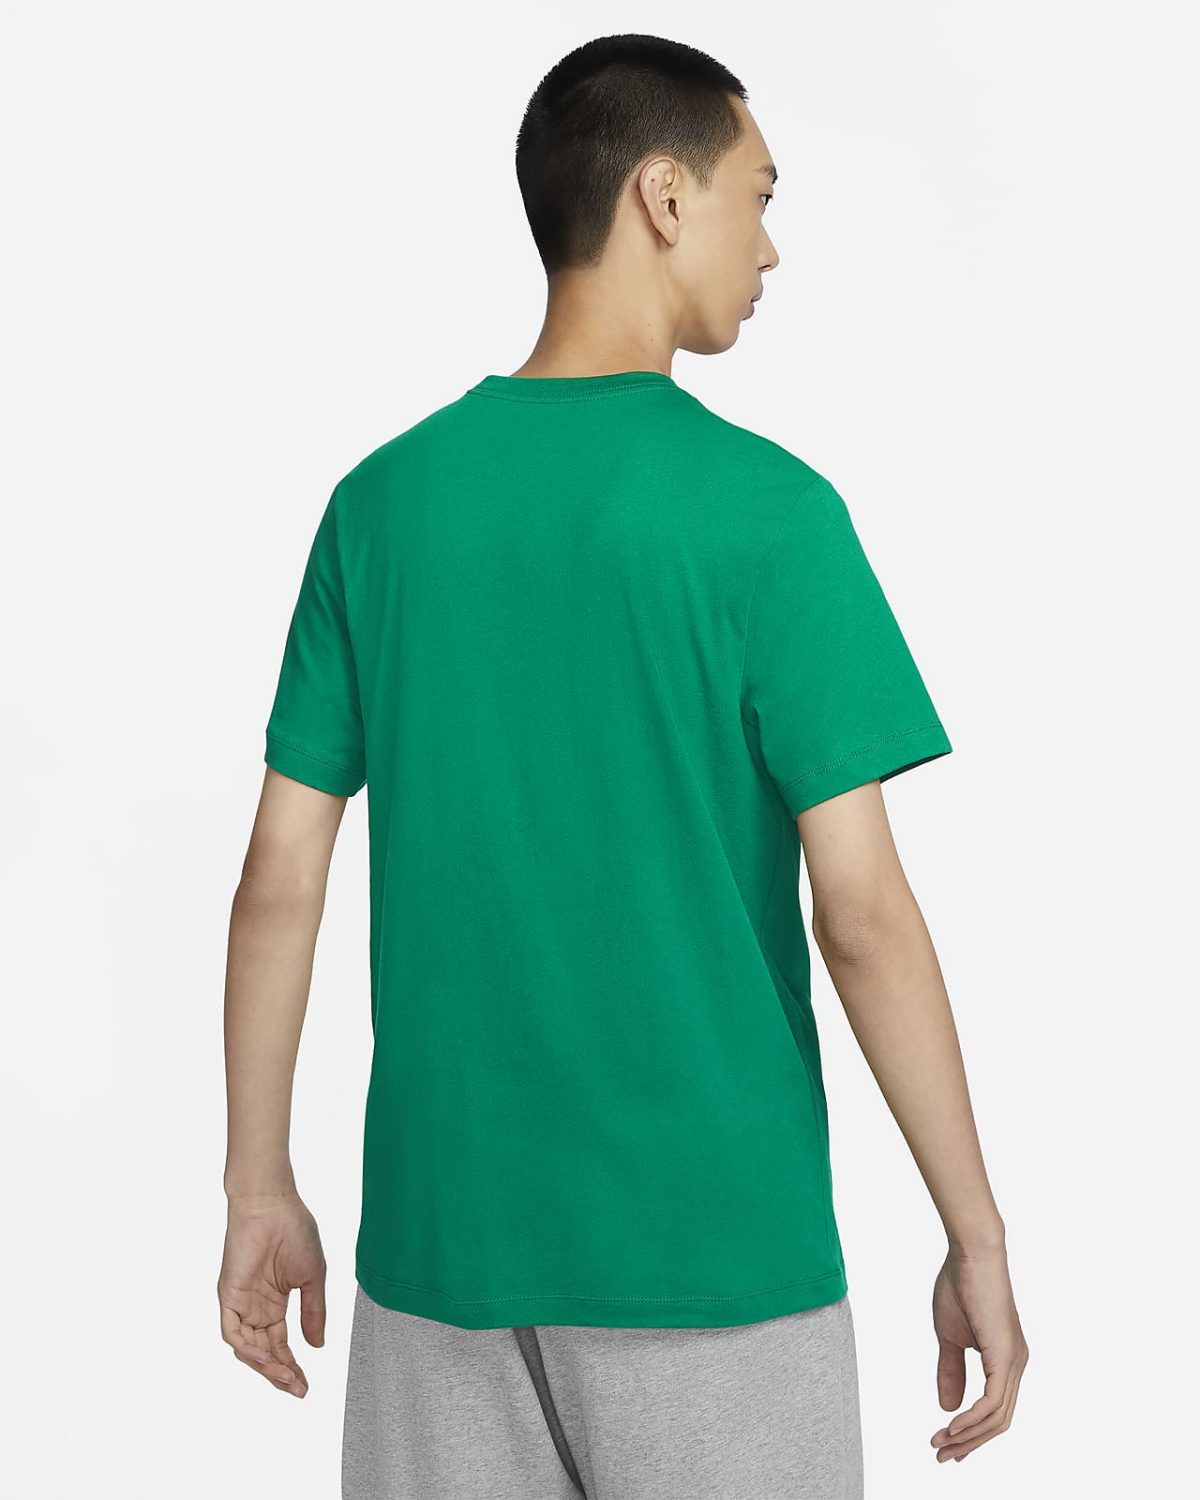 Мужская футболка Nike Sportswear зеленая фотография